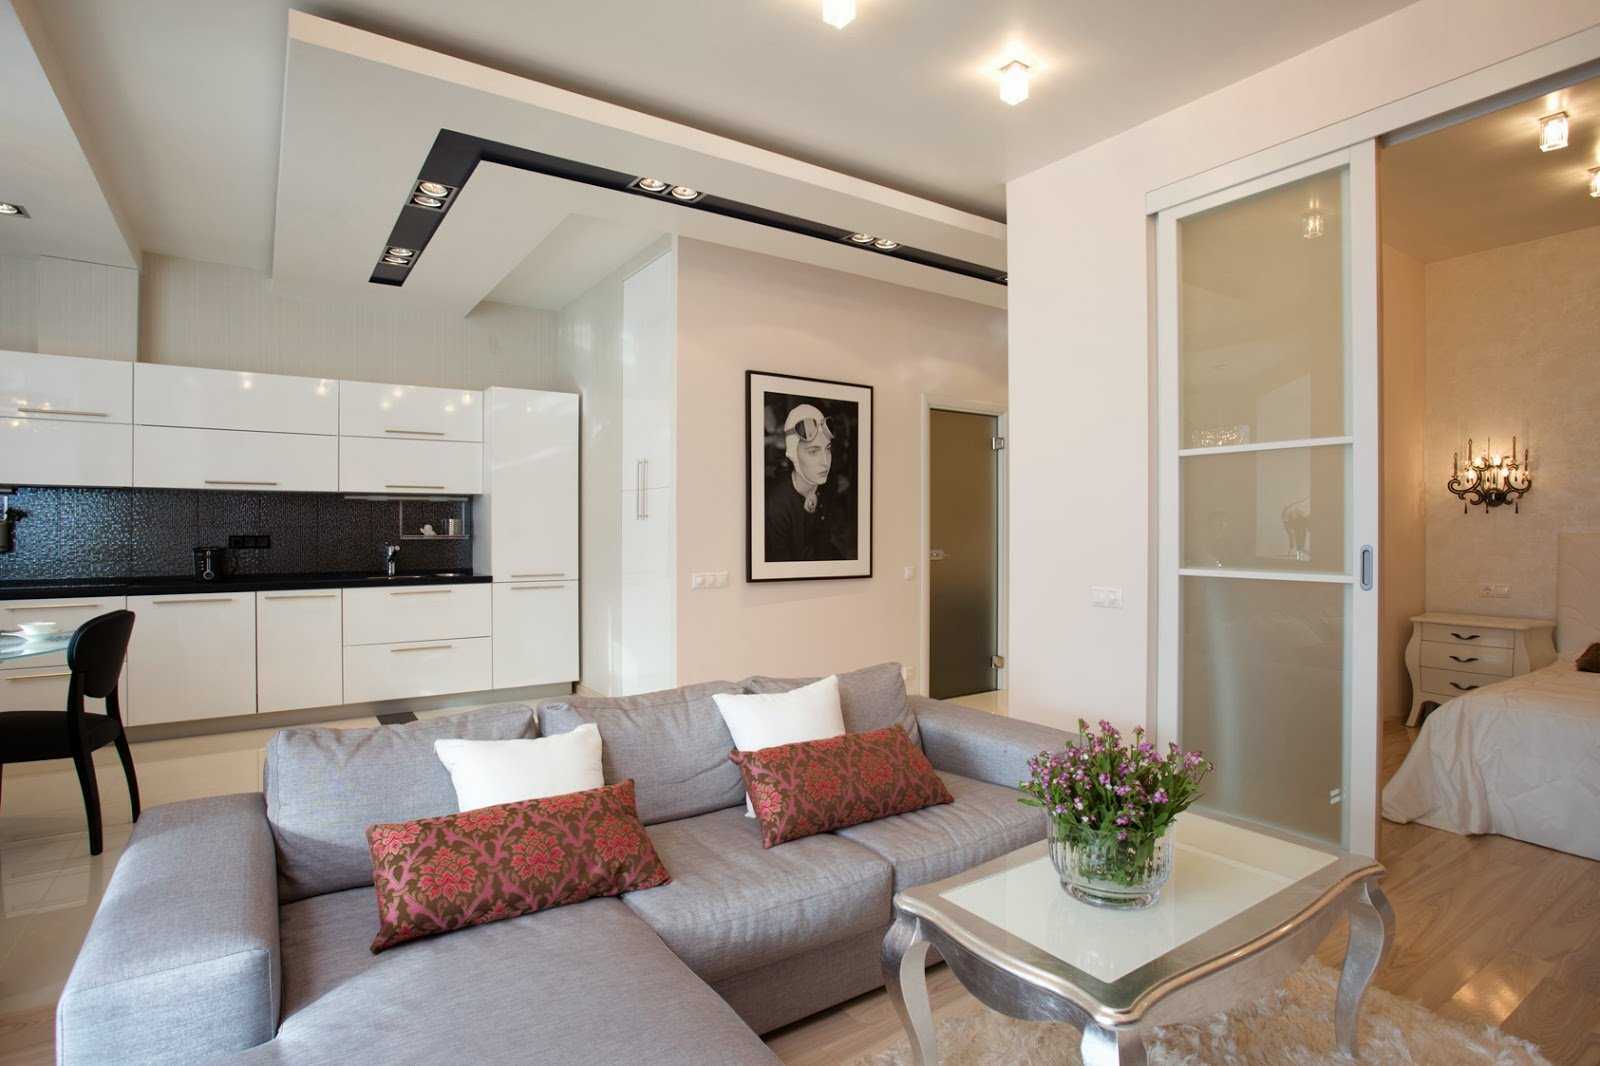 Дизайн интерьера квартиры 40 кв. м.: актуальные решения и варианты оформления квартир (85 фото и видео)